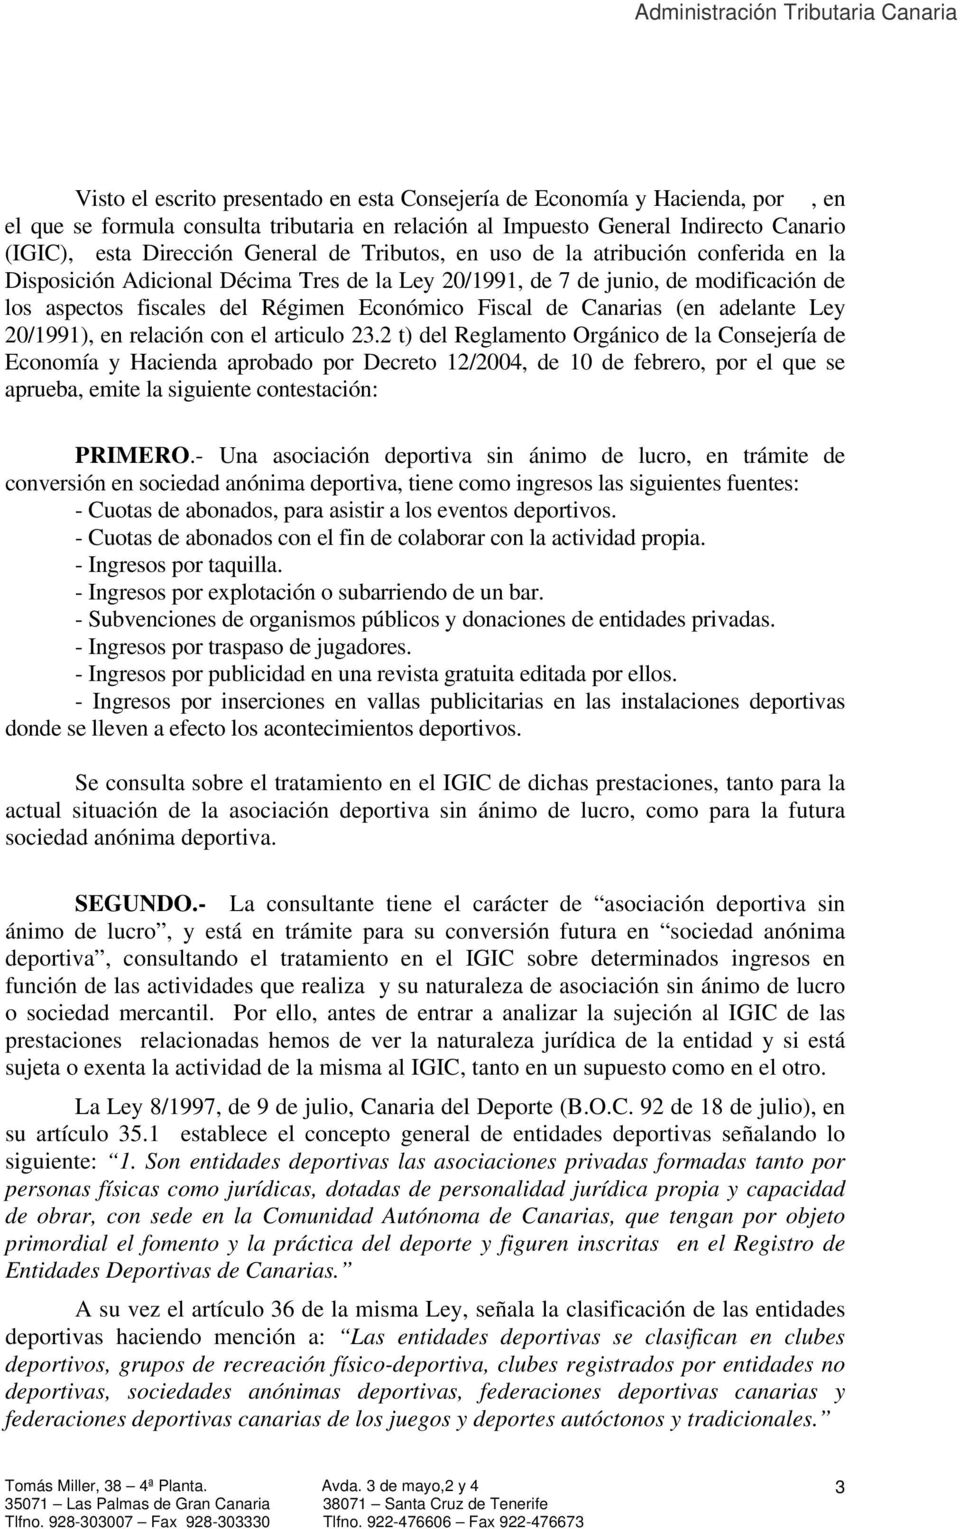 Canarias (en adelante Ley 20/1991), en relación con el articulo 23.